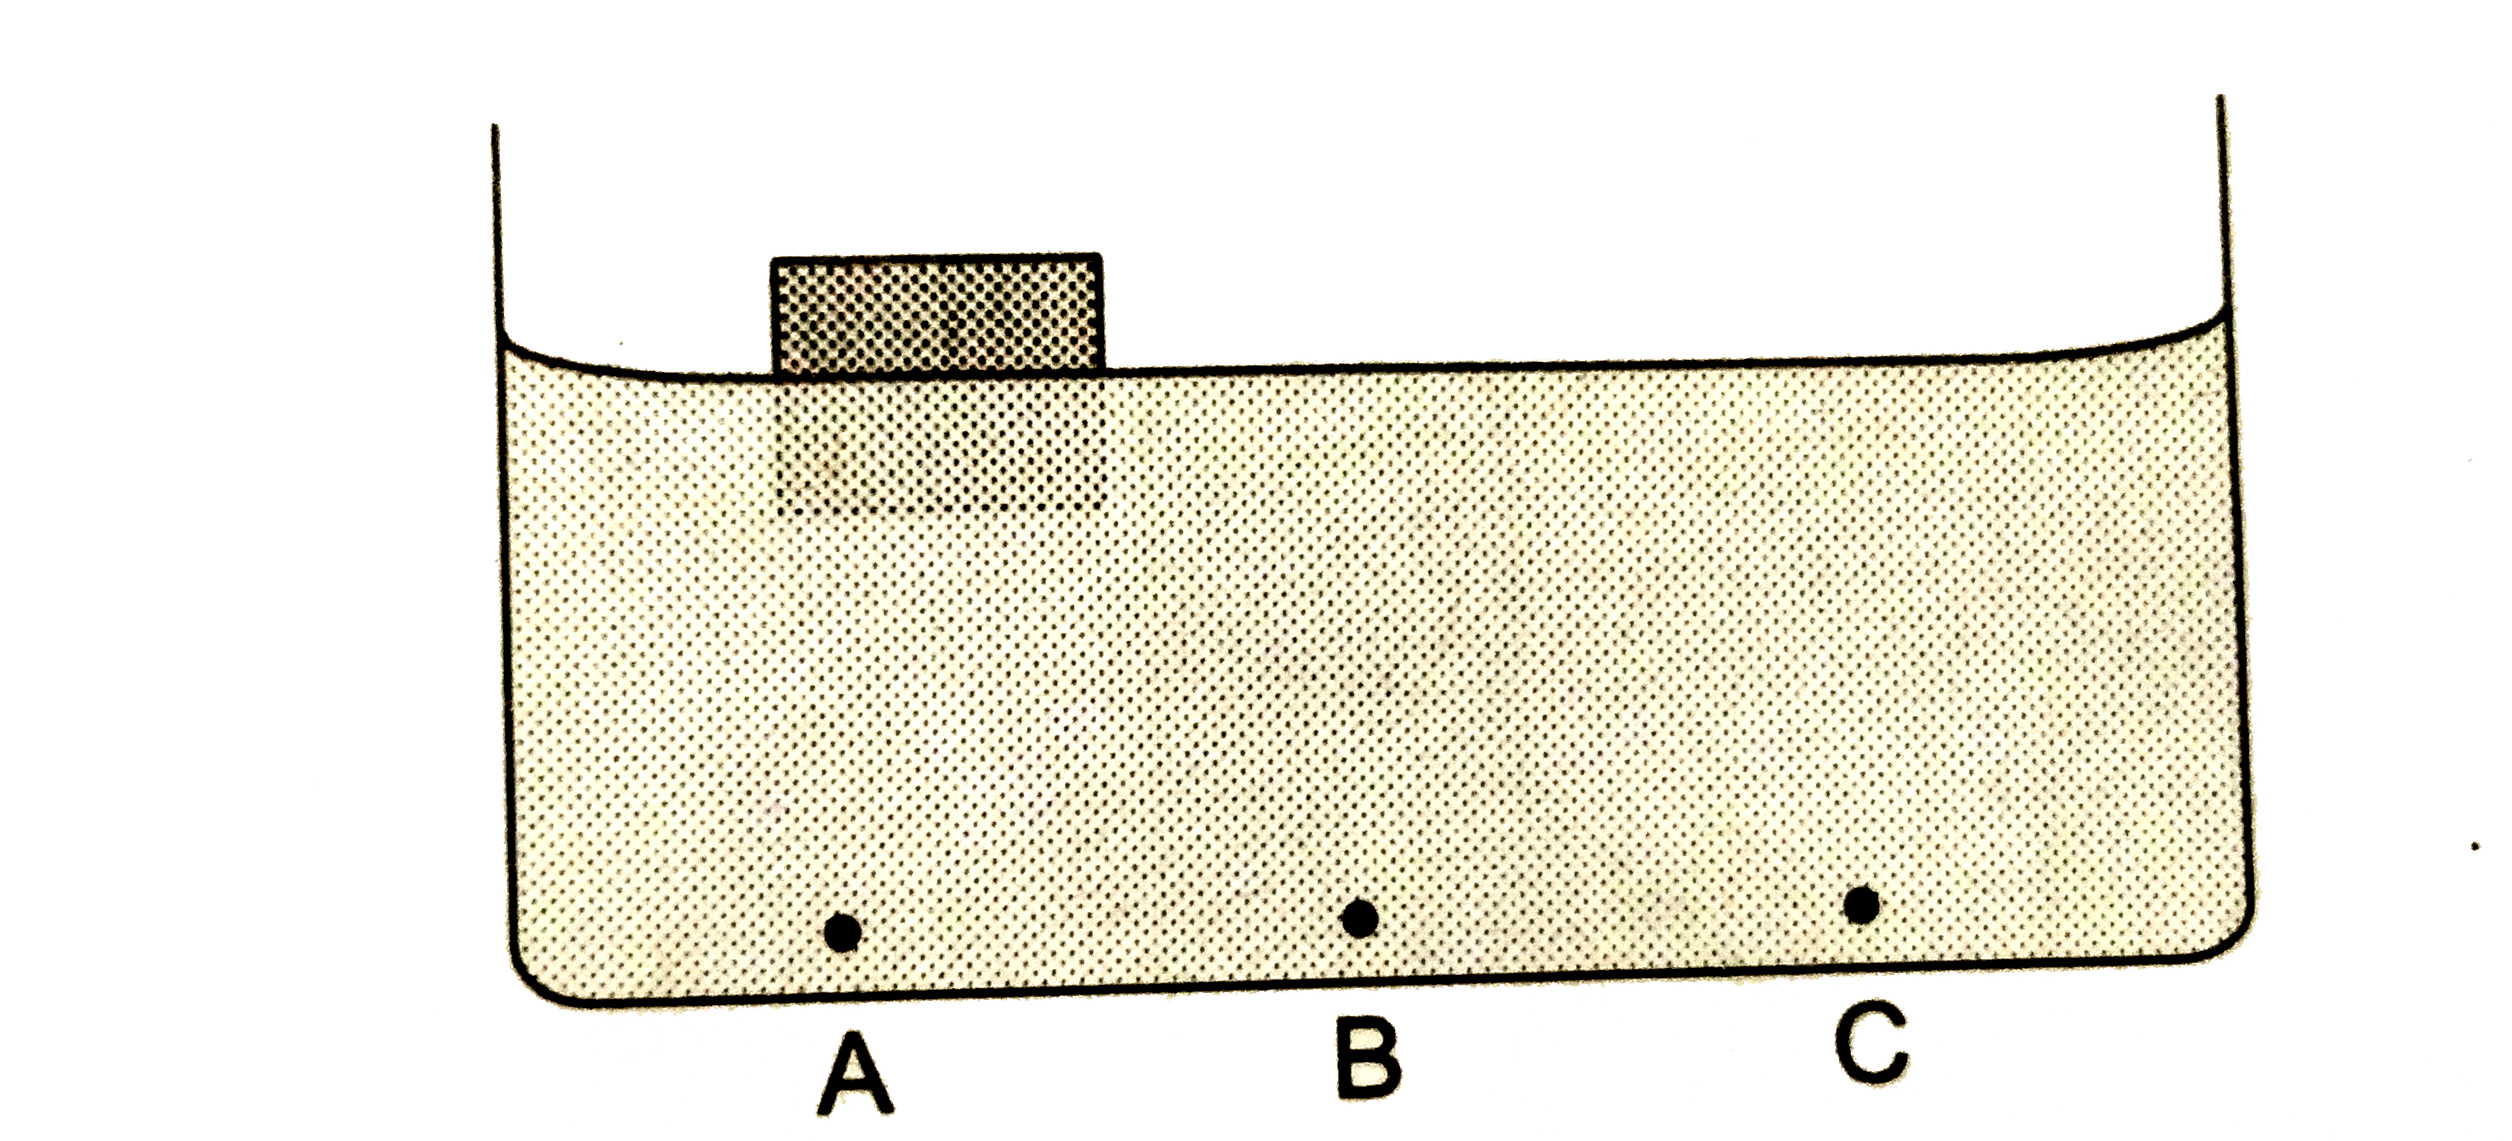 एक बीकर में रखे गए पानी में प्लास्टिक का एक ढक्कन तैर रहा है | वह भी कर के मध्य से एक ओर खिसका हुआ है | चित्र 24.Q3 में बीकर की पेंदी पर तीन बिंदु A,B,C दिखाए गए हैं, जहां दाब क्रमशः P(A),P(B)